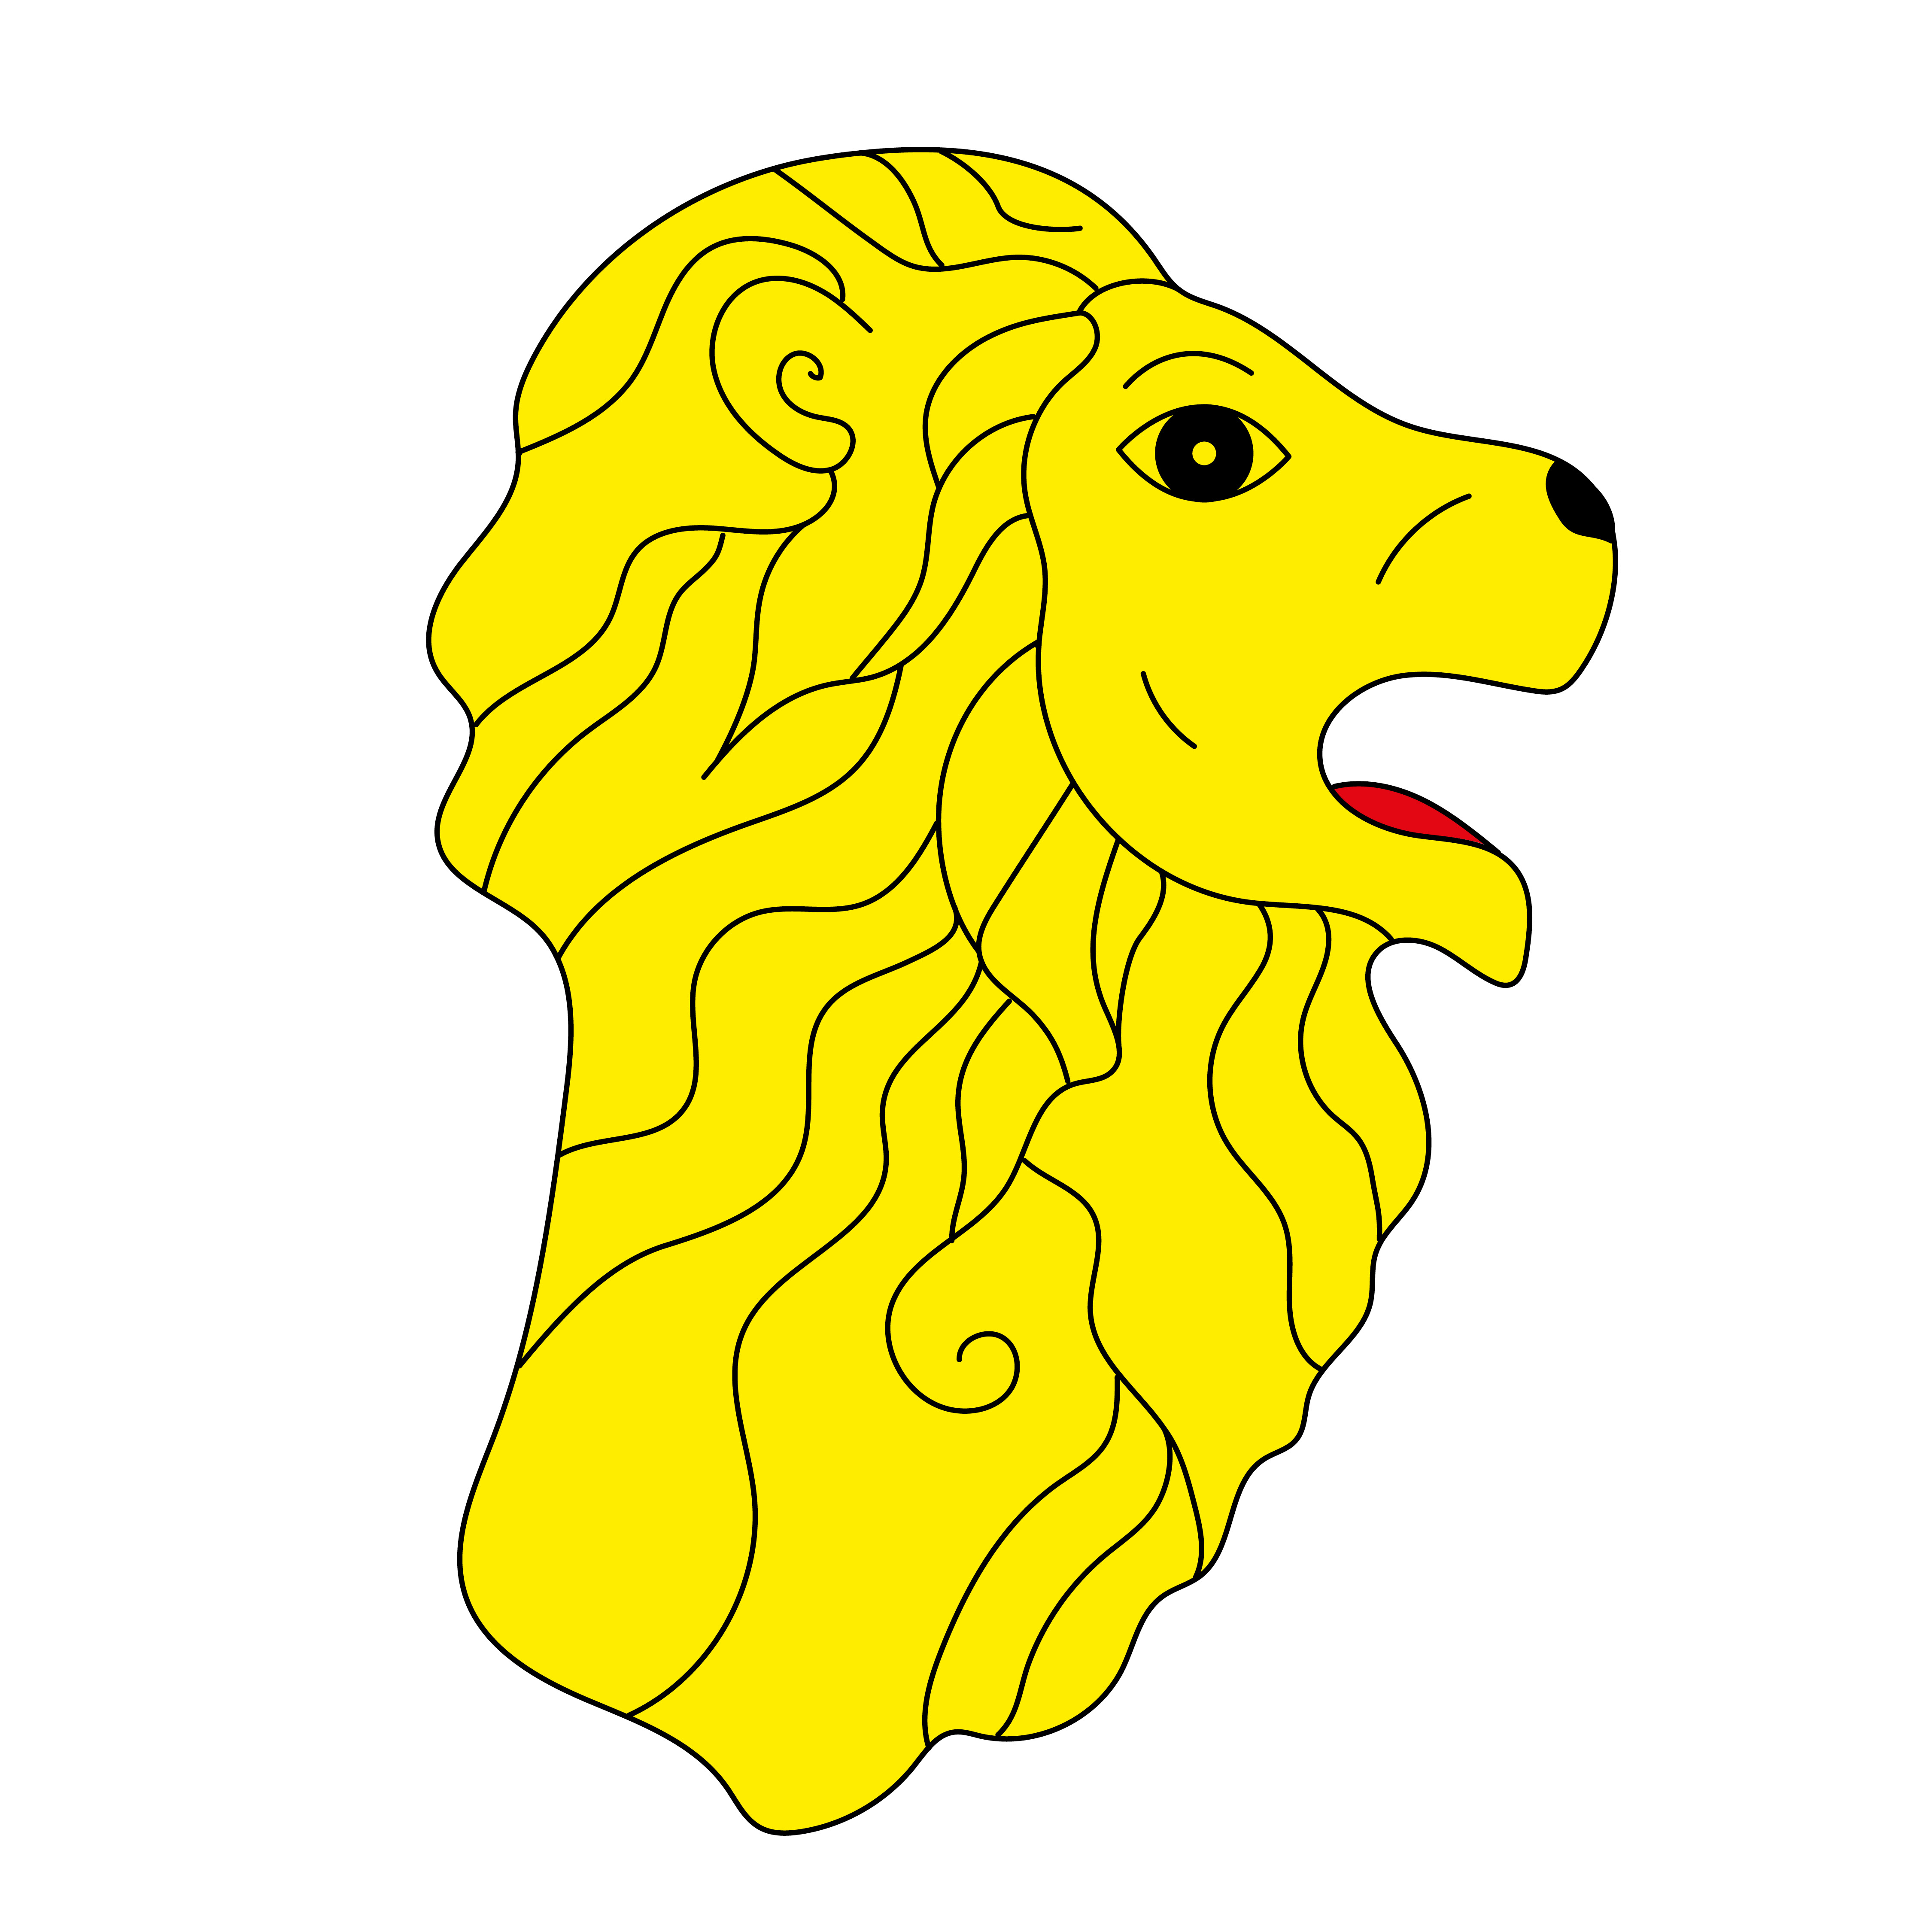 L'image est une illustration réalisée par Neo Neo. Elle représente la tête d'un lion avec sa crinière, vue de profil. Le lion a la gueule ouverte, et a l'air un peu idiot.